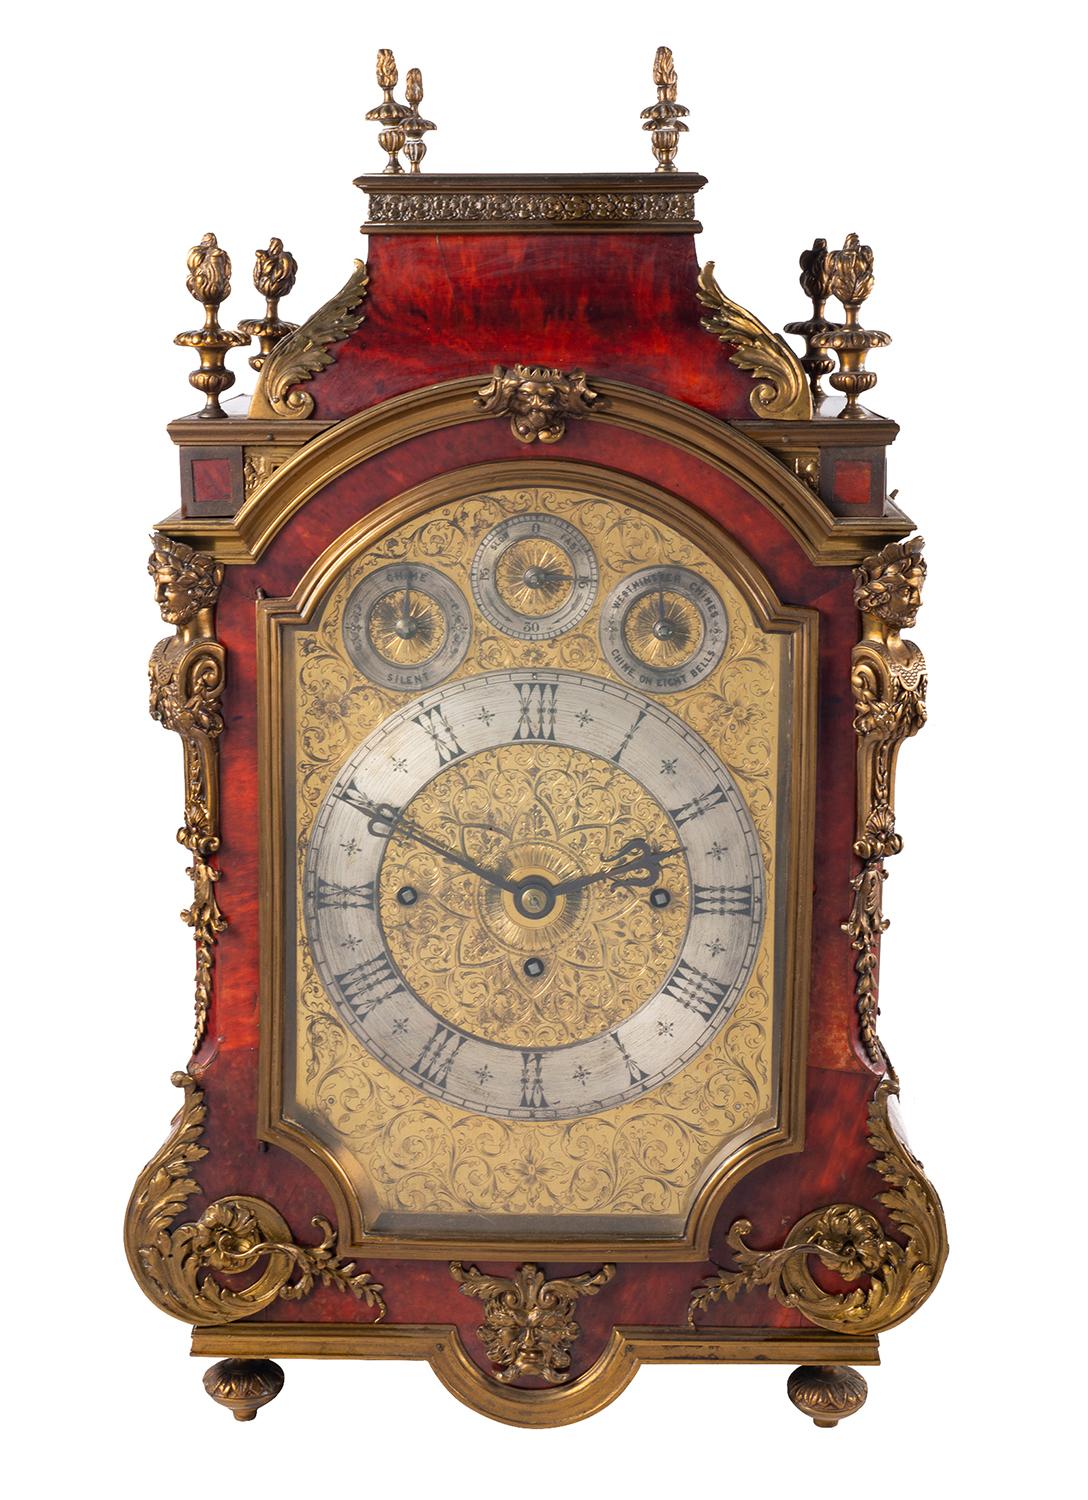 Eine sehr beeindruckende und feine Qualität des späten 19. Jahrhunderts Englisch Klammer / Kaminsims Uhr. Furniert in rotem Schildpatt und mit wunderschönen vergoldeten Ormolu-Beschlägen und -Formteilen. Mit geflammten Endstücken, durchbrochenen,